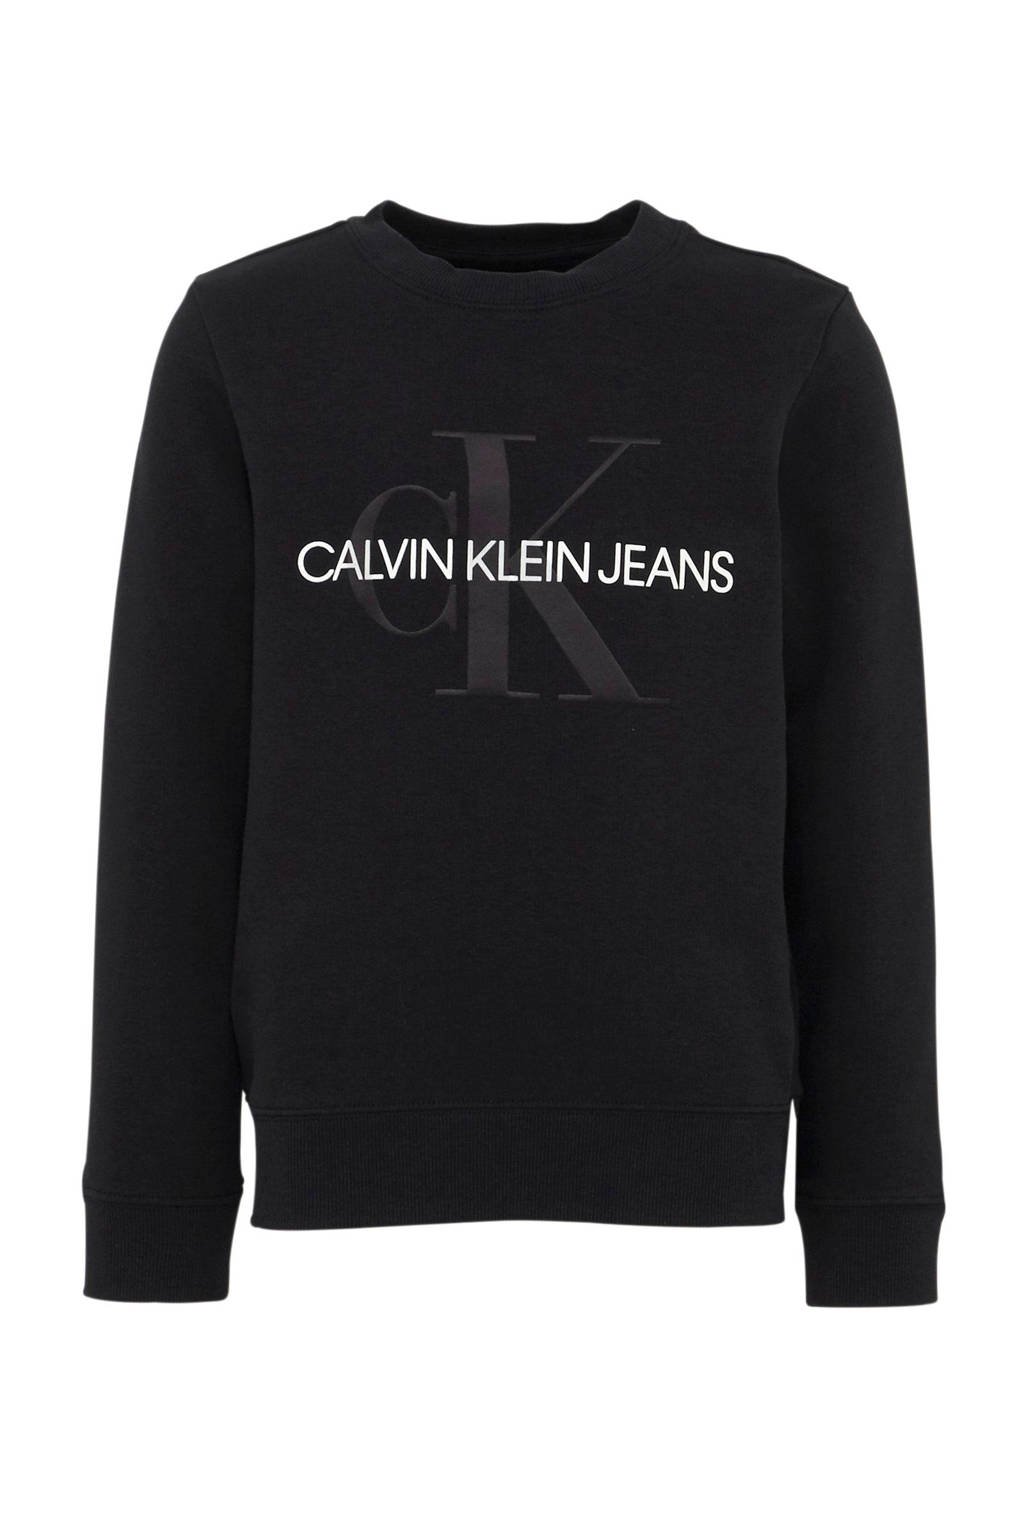 bak Inspecteren zacht CALVIN KLEIN JEANS sweater met logo zwart | wehkamp